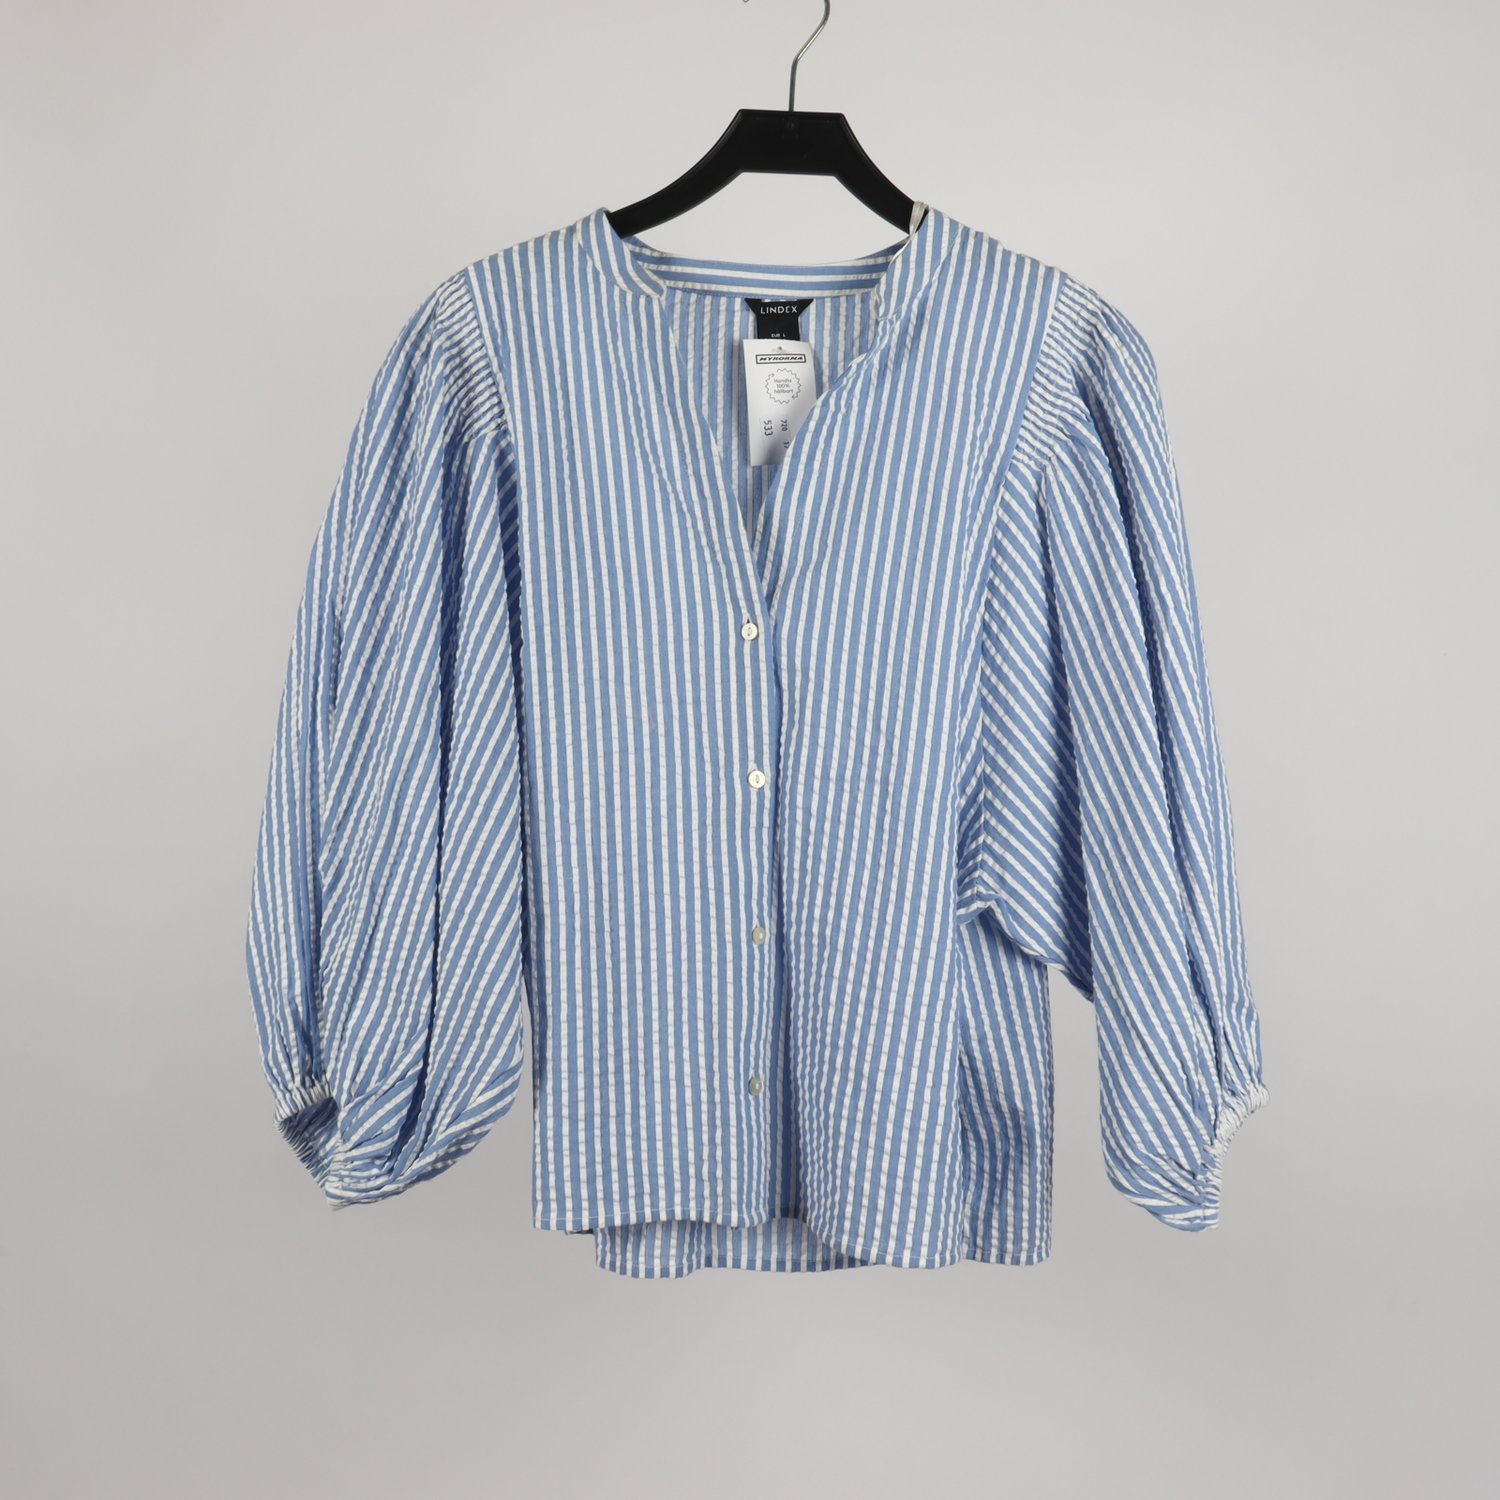 Skjorta, Lindex, bomull, randig blå/vit, stl.L